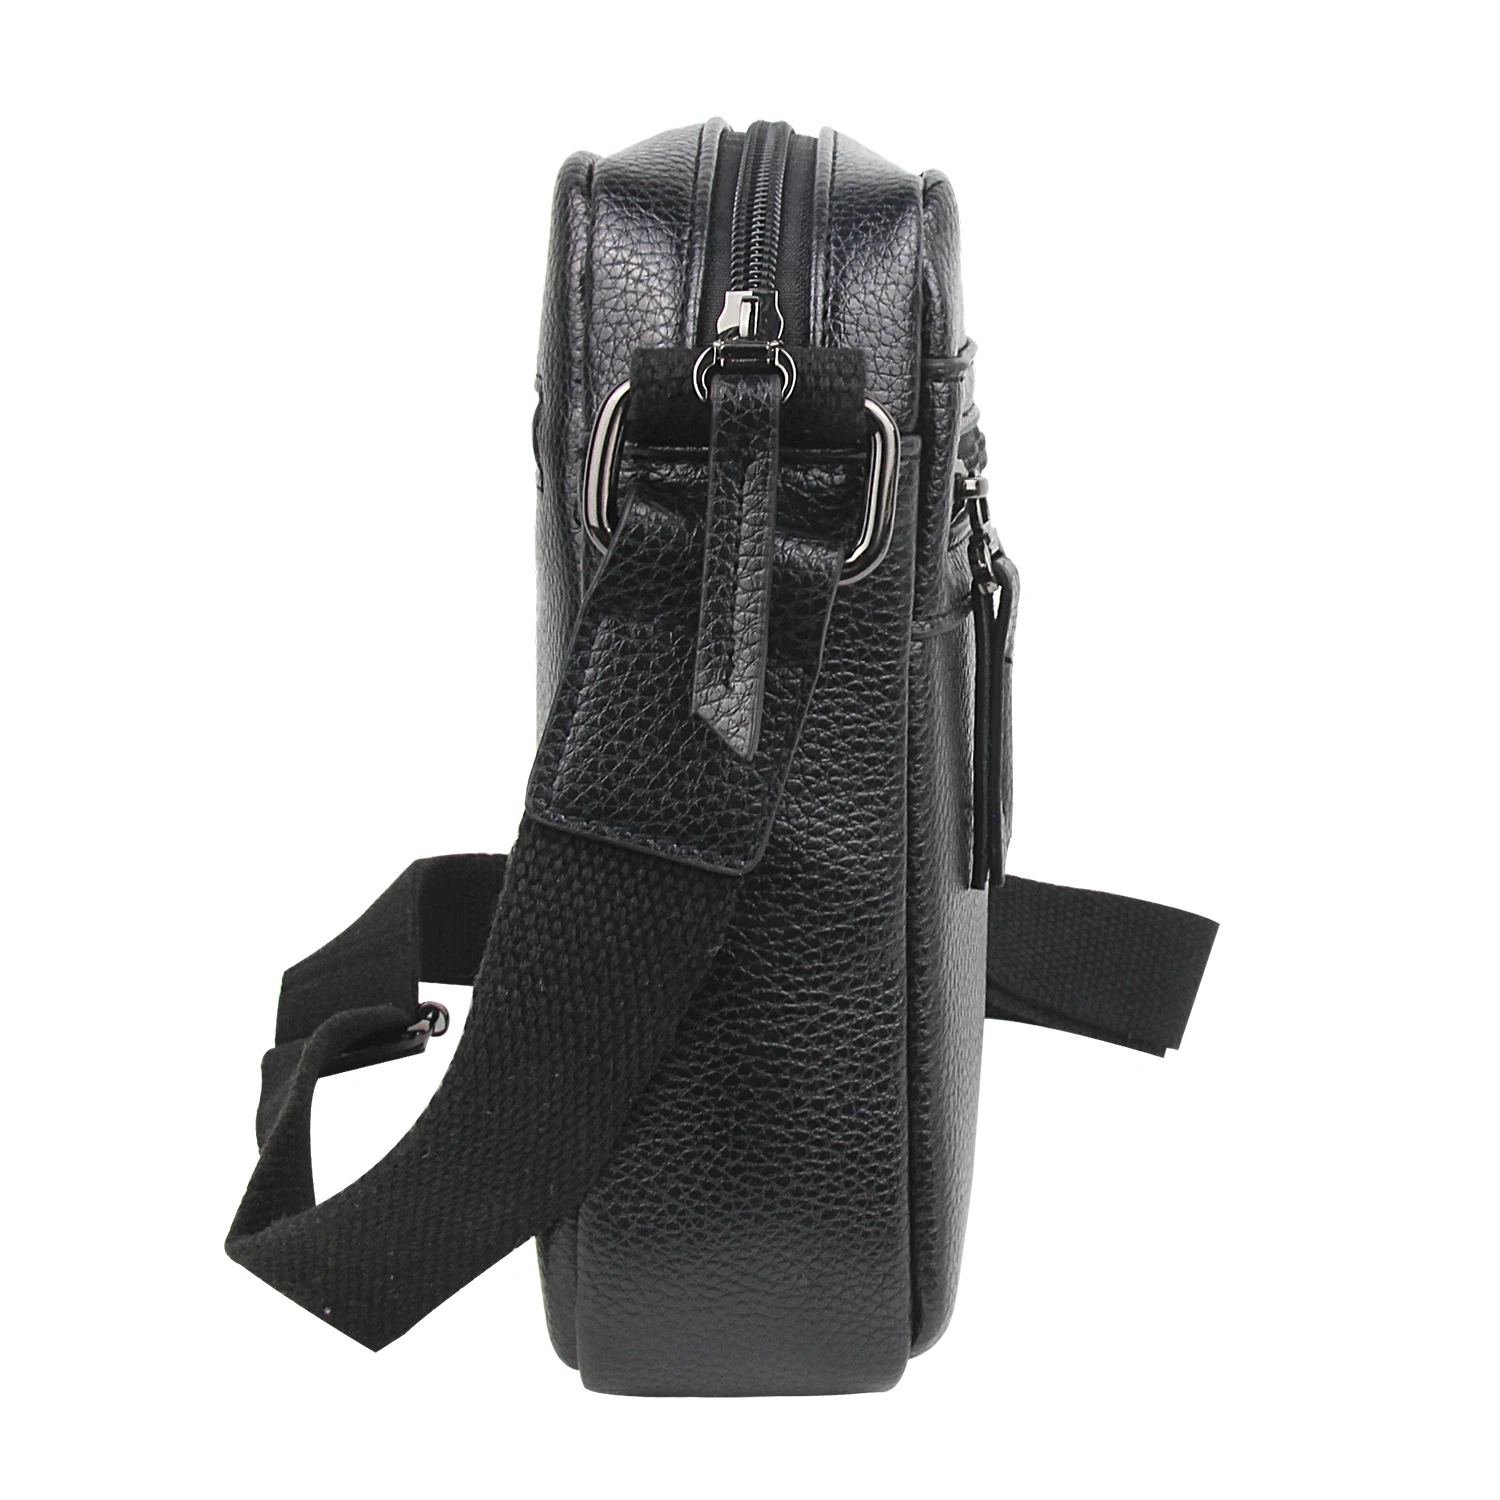 Lemuvlt Small Crossbody Bag for Men Shoulder Bag Mens Purse Satchel Leather Messenger Bag Gift Man